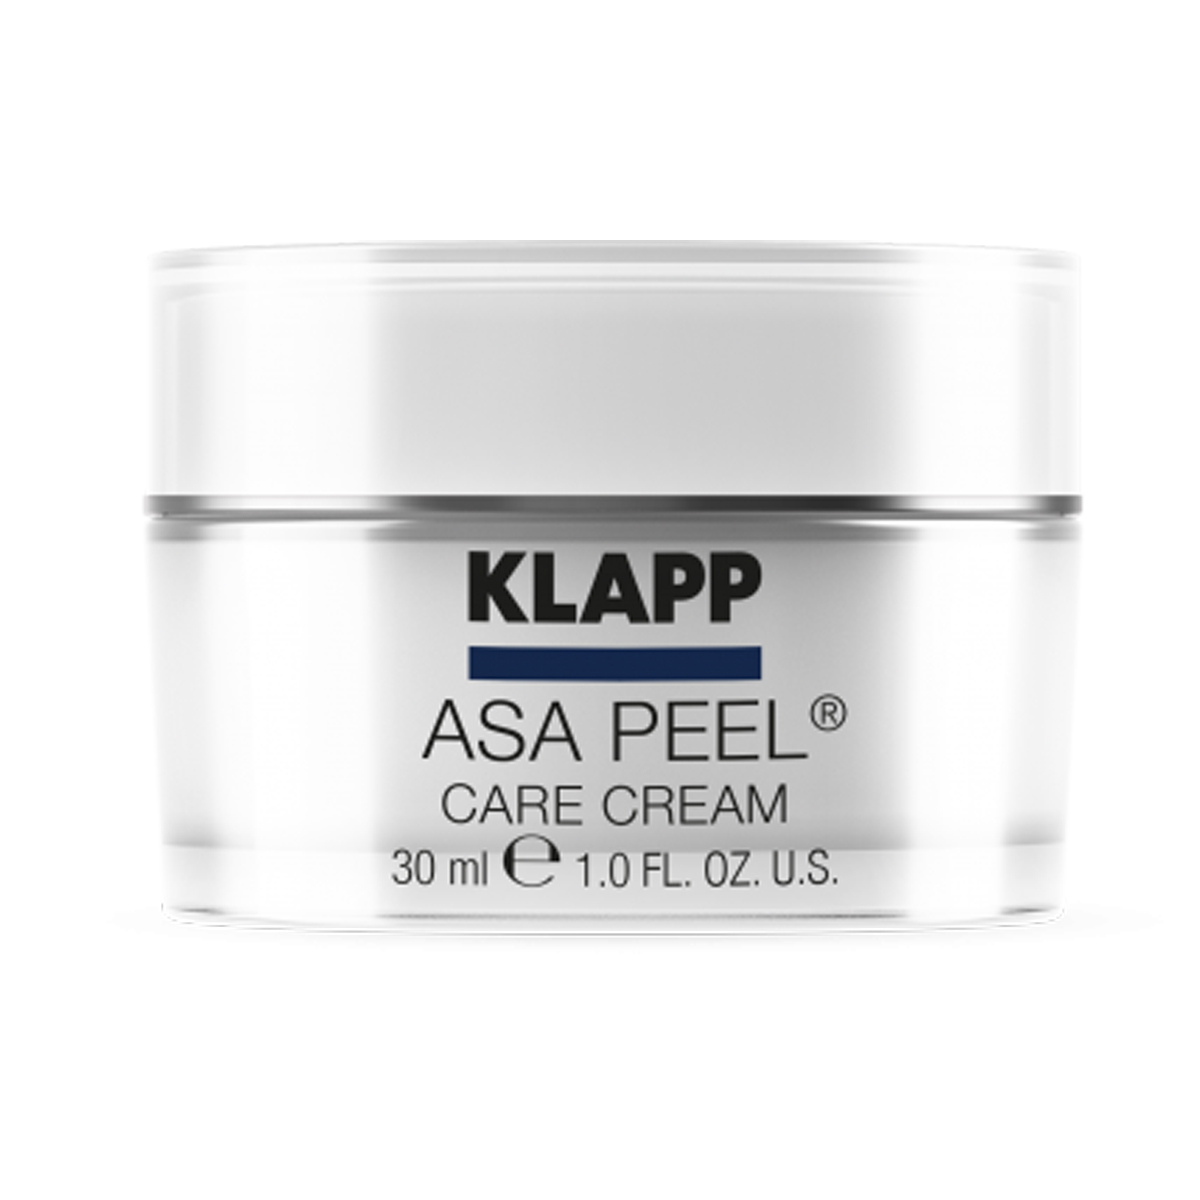 KLAPP Asa Peel ® Care Cream Mit Fruchtsäure 30 ml